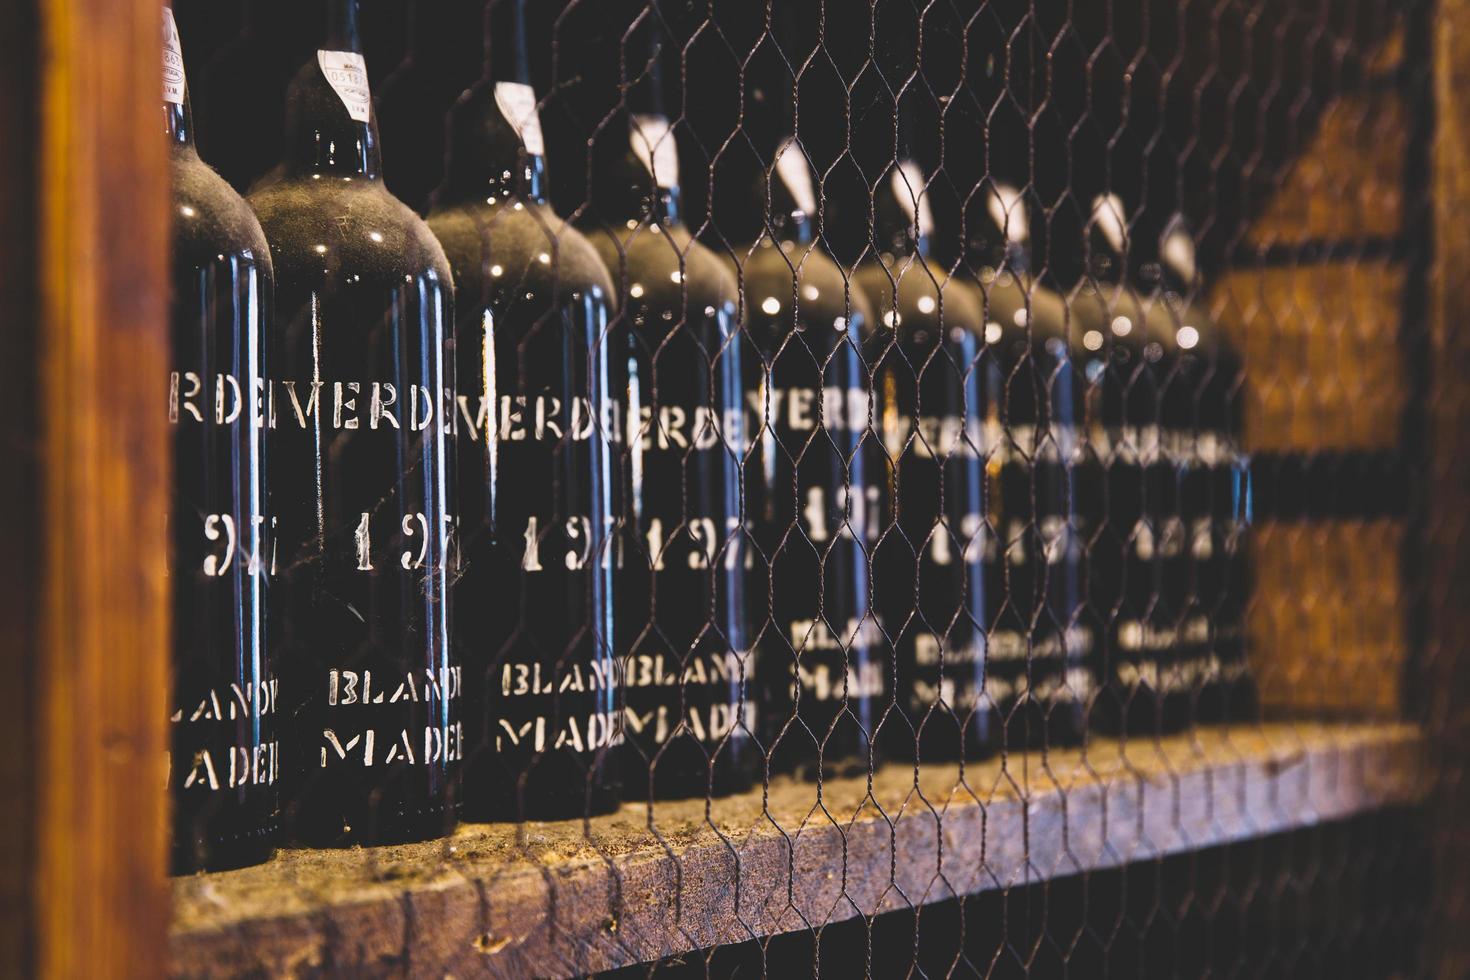 Madeira, Portogallo, 2020 - dettaglio della conservazione del vino di blandy del vino vintage di Madeira in Portogallo. è un'azienda vinicola a conduzione familiare fondata da john blandy nel 1811. foto